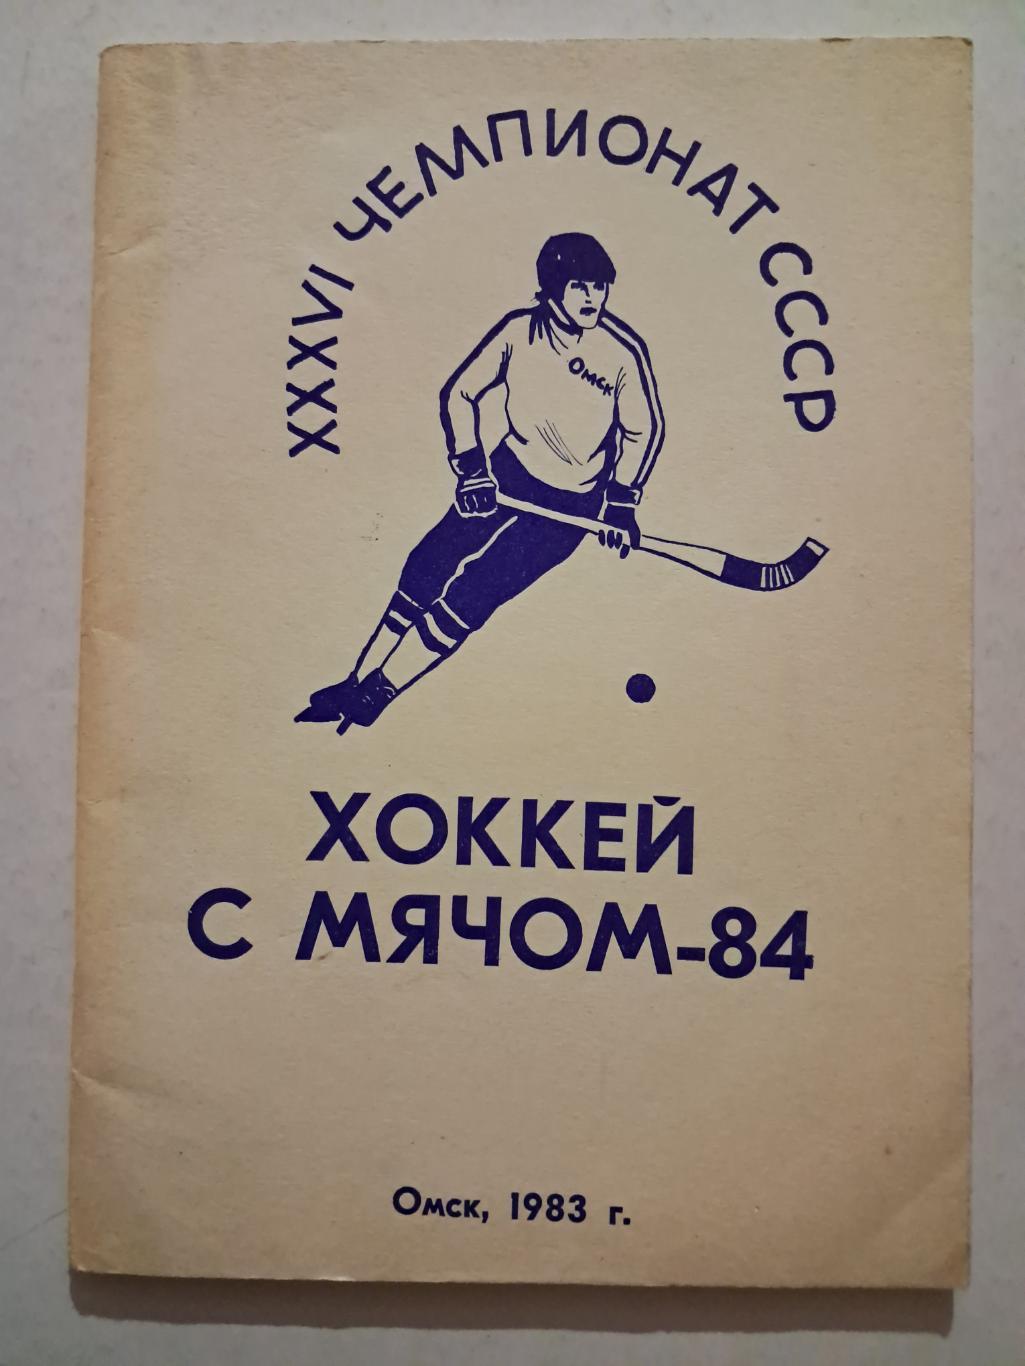 Календарь-справочник по хоккею с мячом Омск 1983